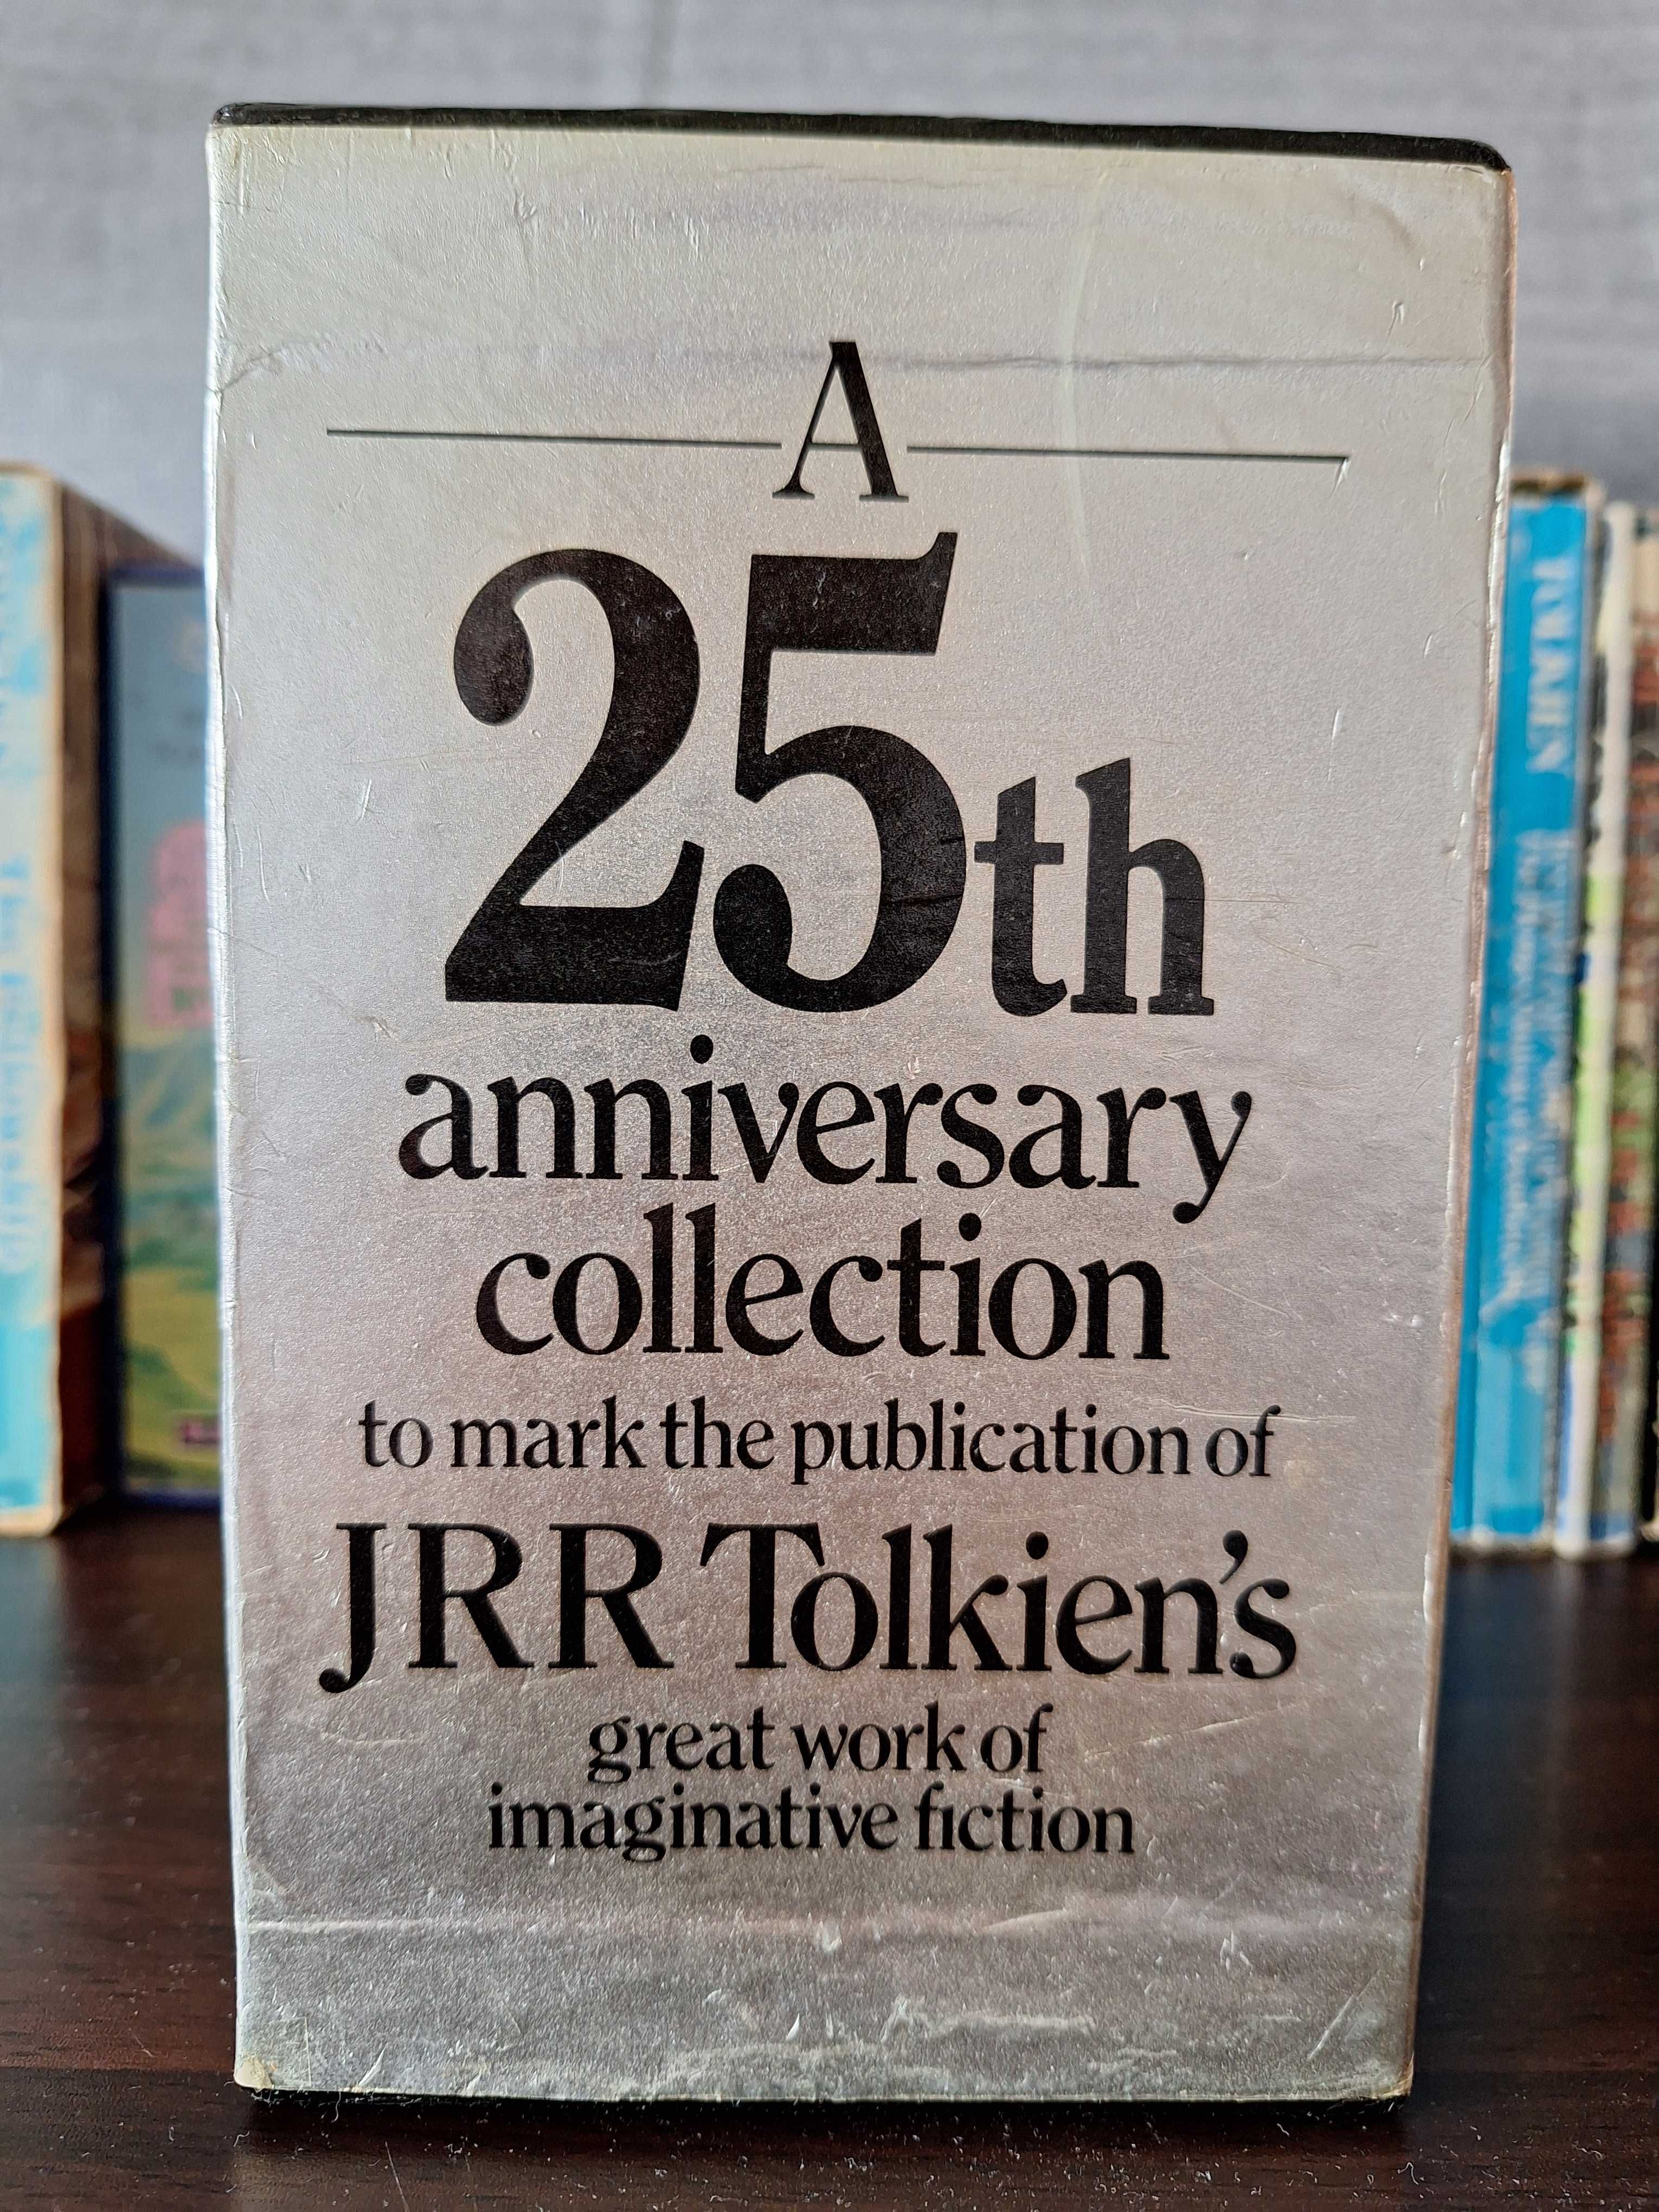 Lord Of The Rings set caixa colecção 25º aniversário (1979)